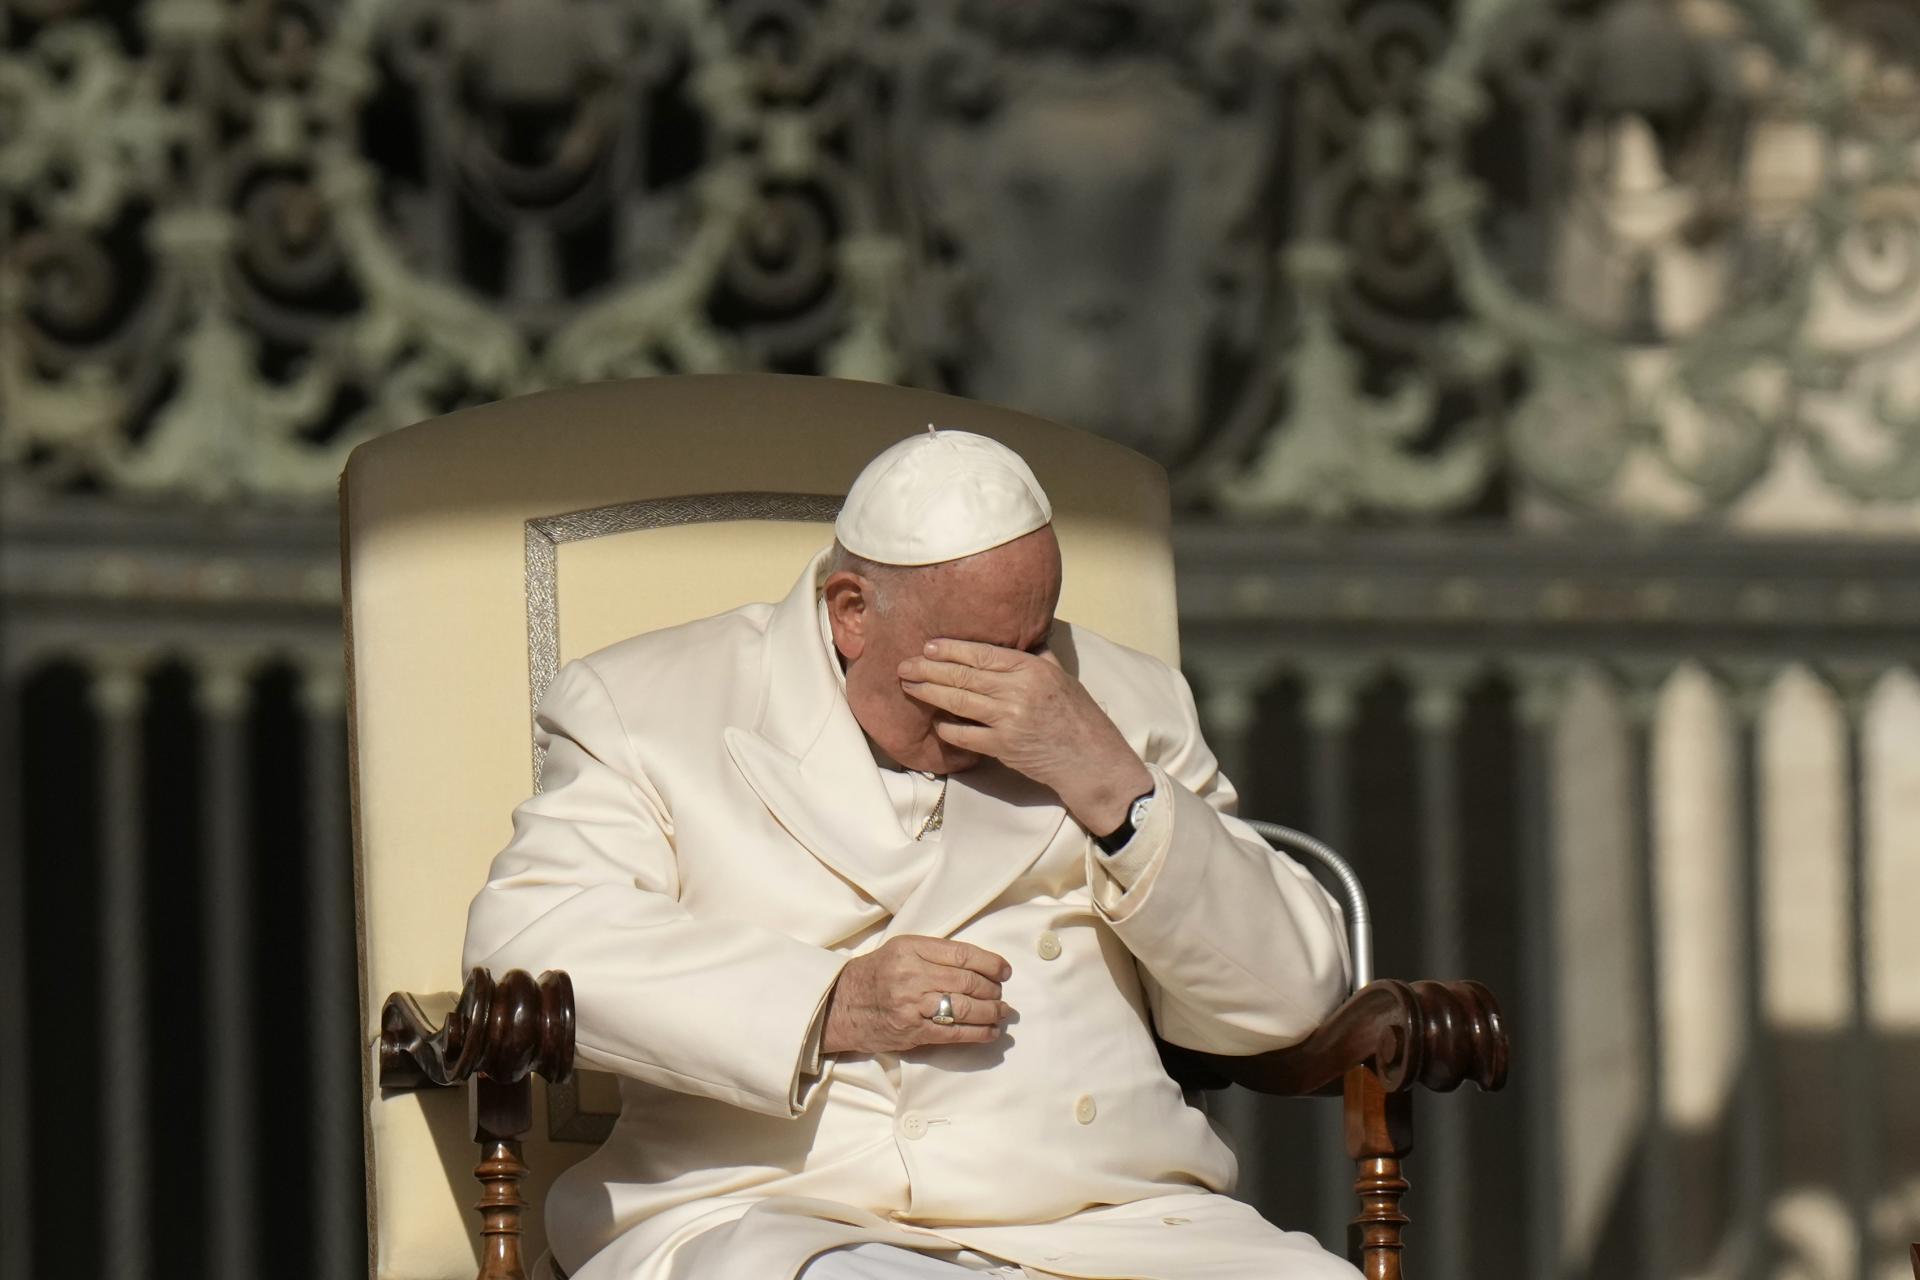 Pápež má pľúcnu infekciu, nie je to covid. V nemocnici ostane pár dní, potvrdil Vatikán